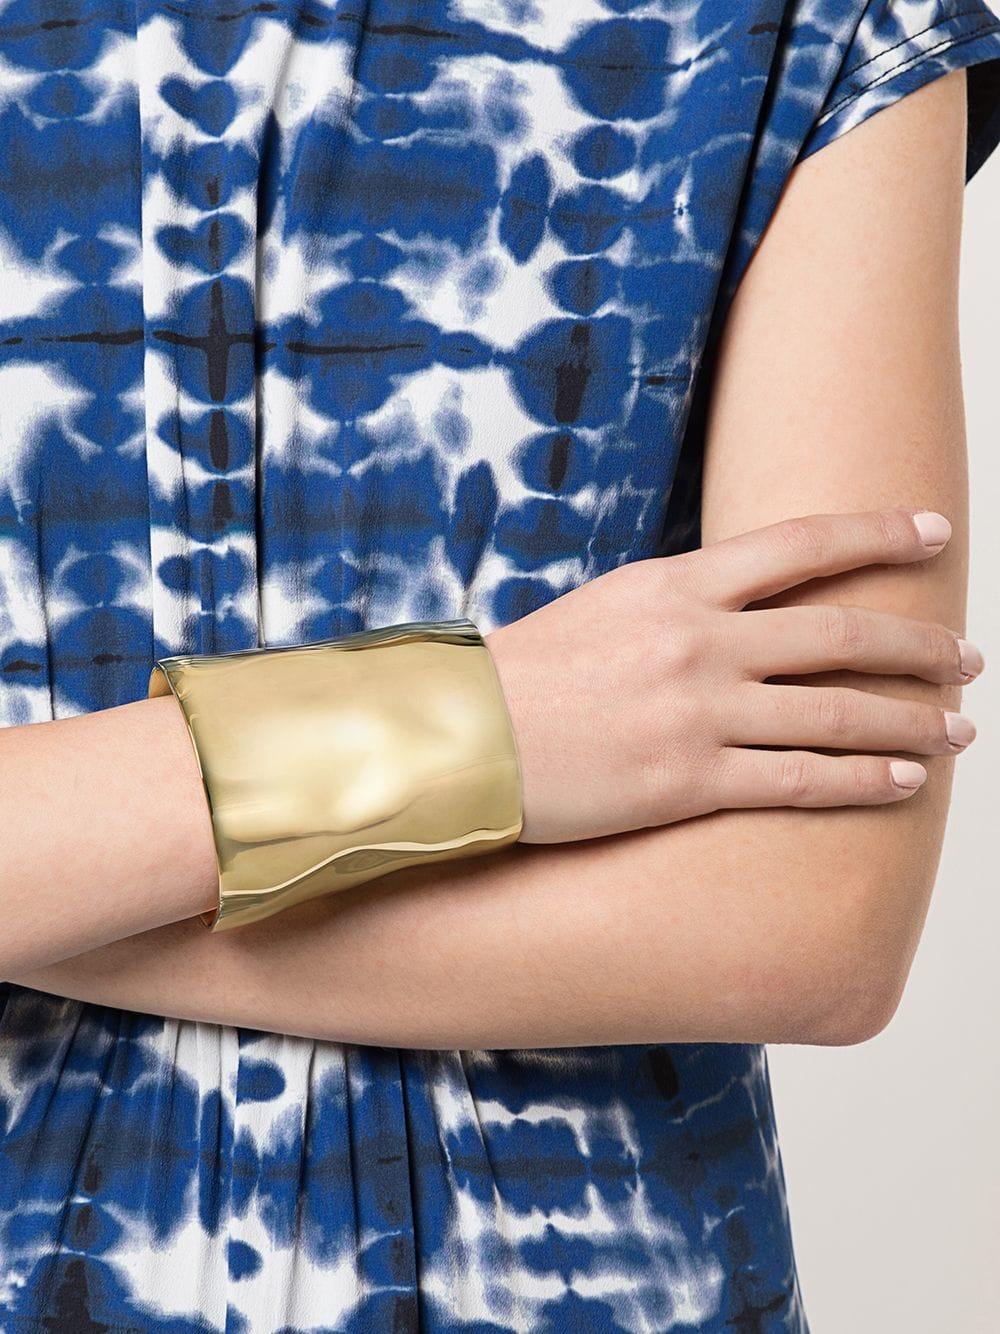 Women's Proenza Schouler XL Gold Hammered Cuff Bracelet